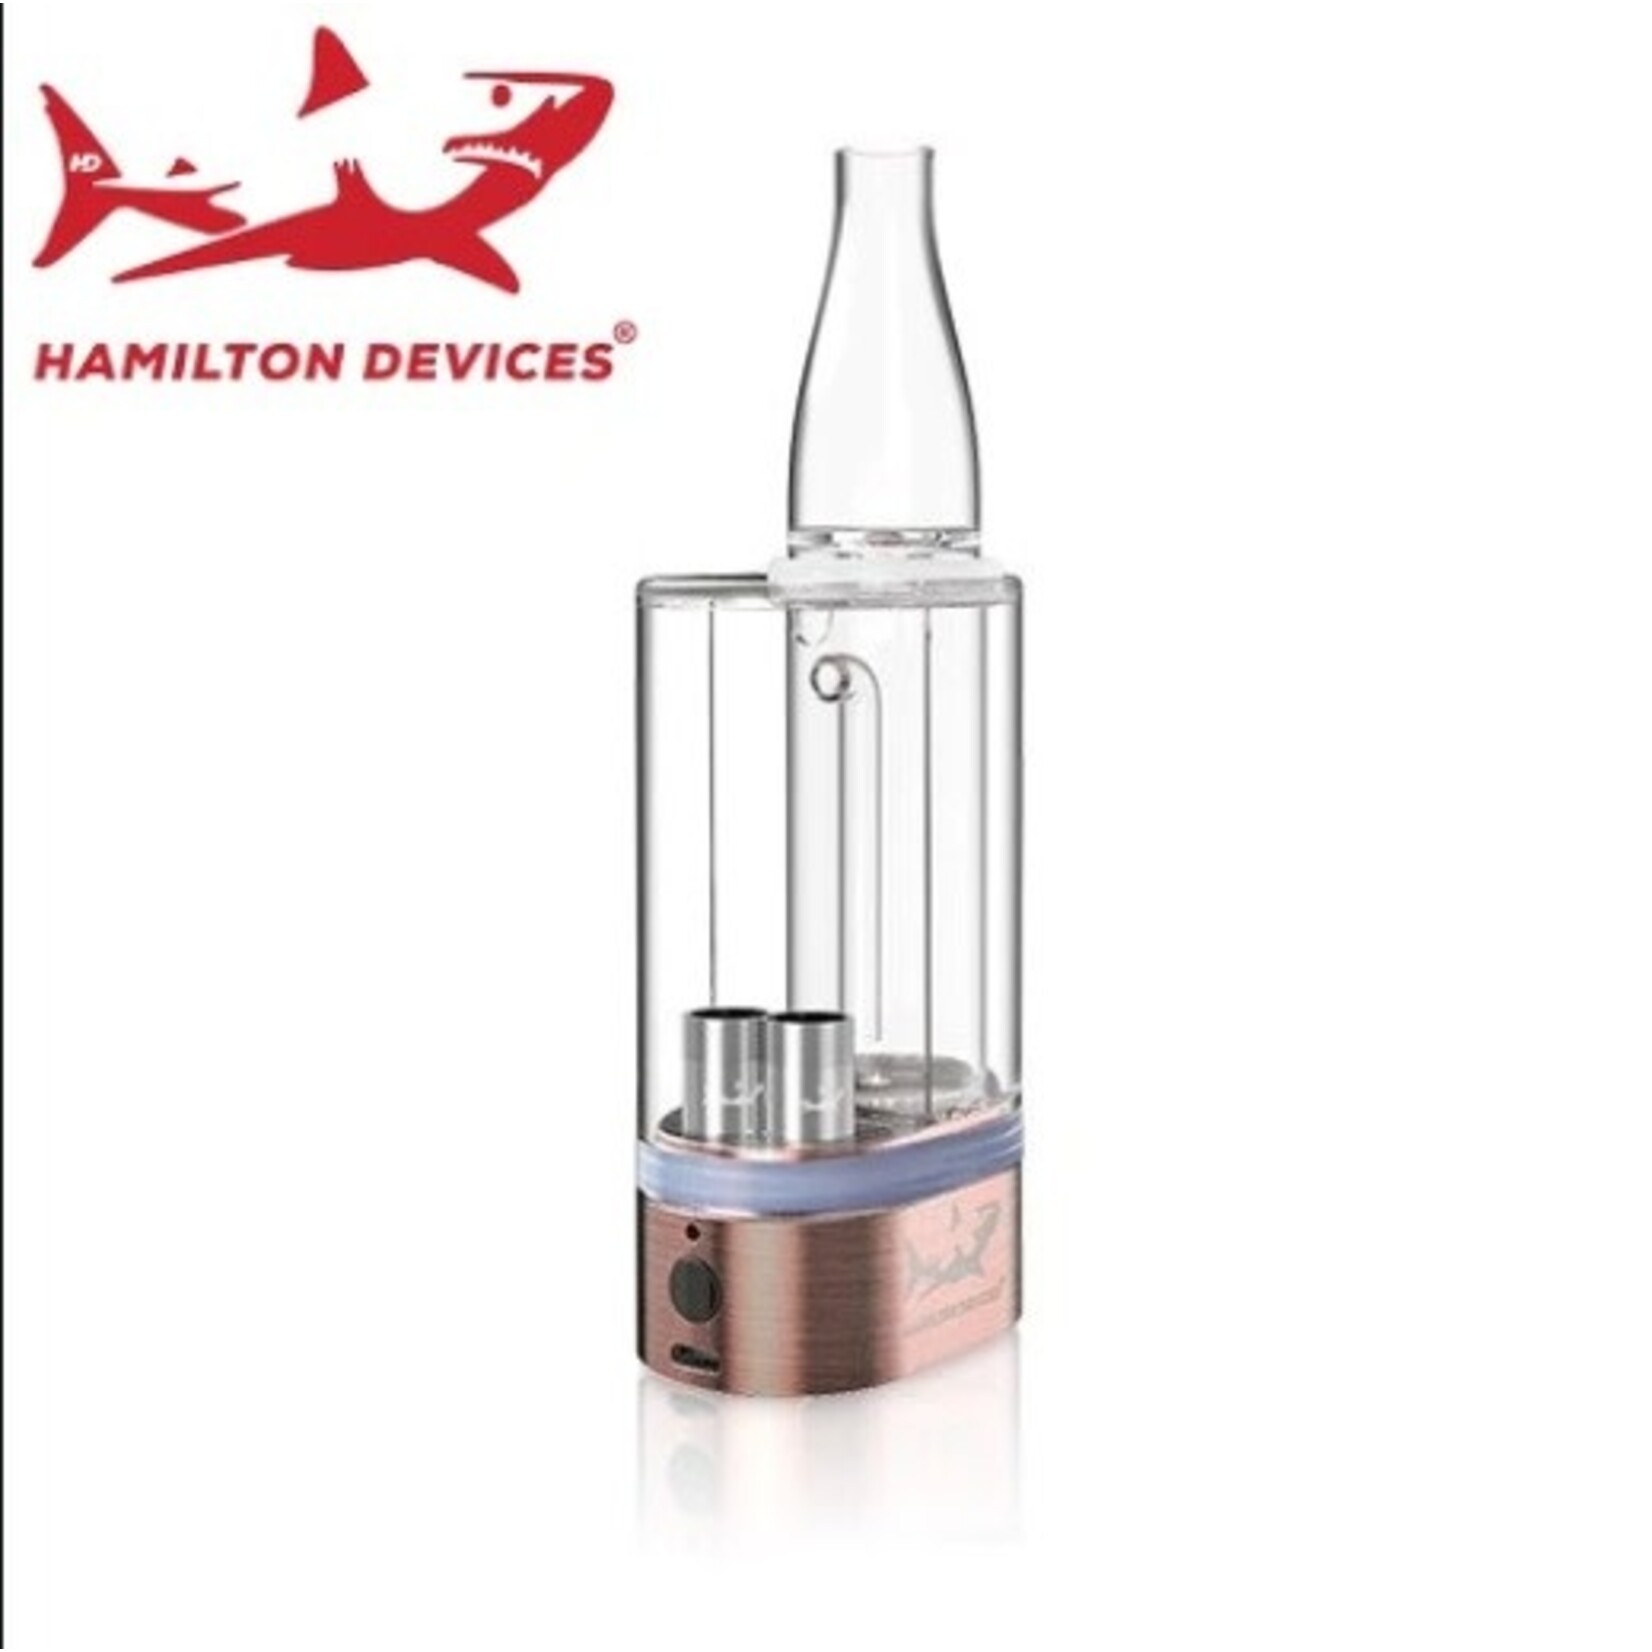 Hamilton Hamilton Devices - PS1 1100mah 2 In 1 Vaporizer